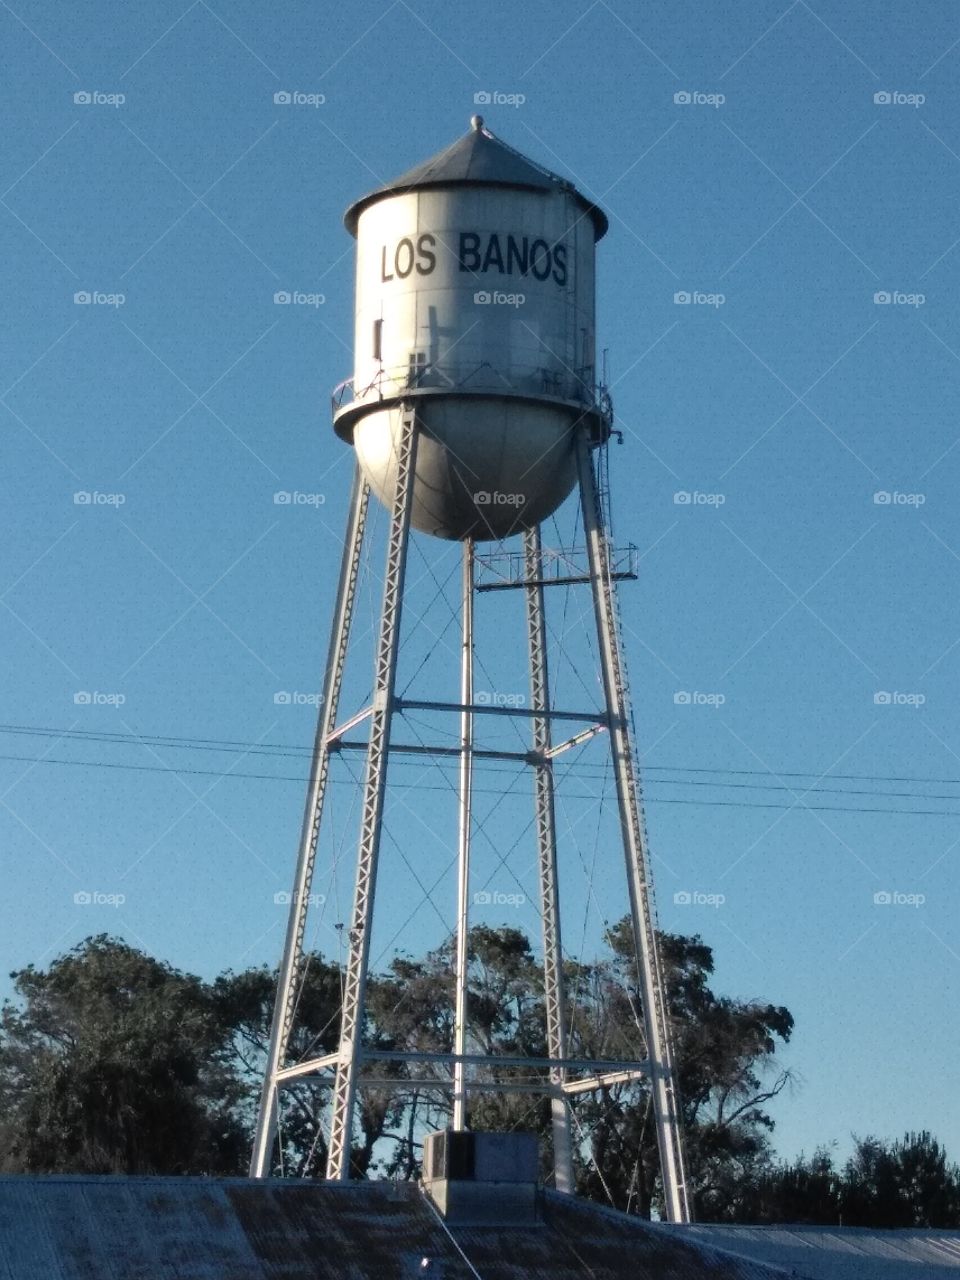 Los banos water tower